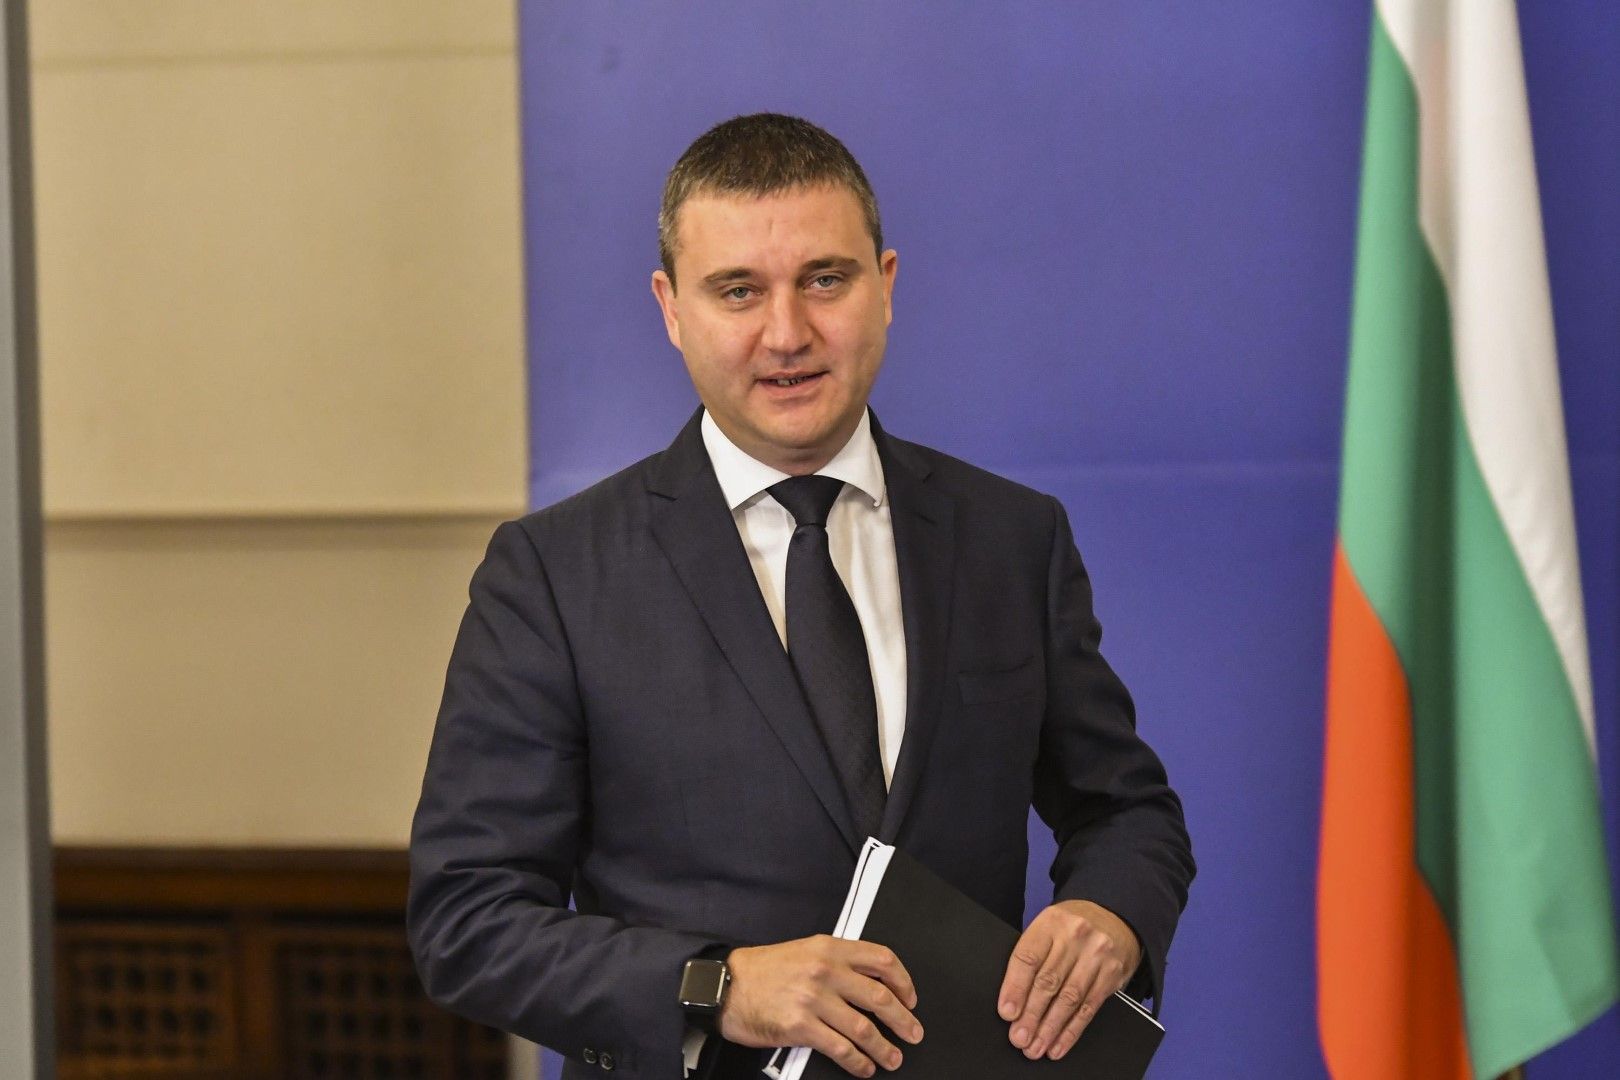 Борисов може още дълго да си управлява джипа, заяви Владислав Горанов